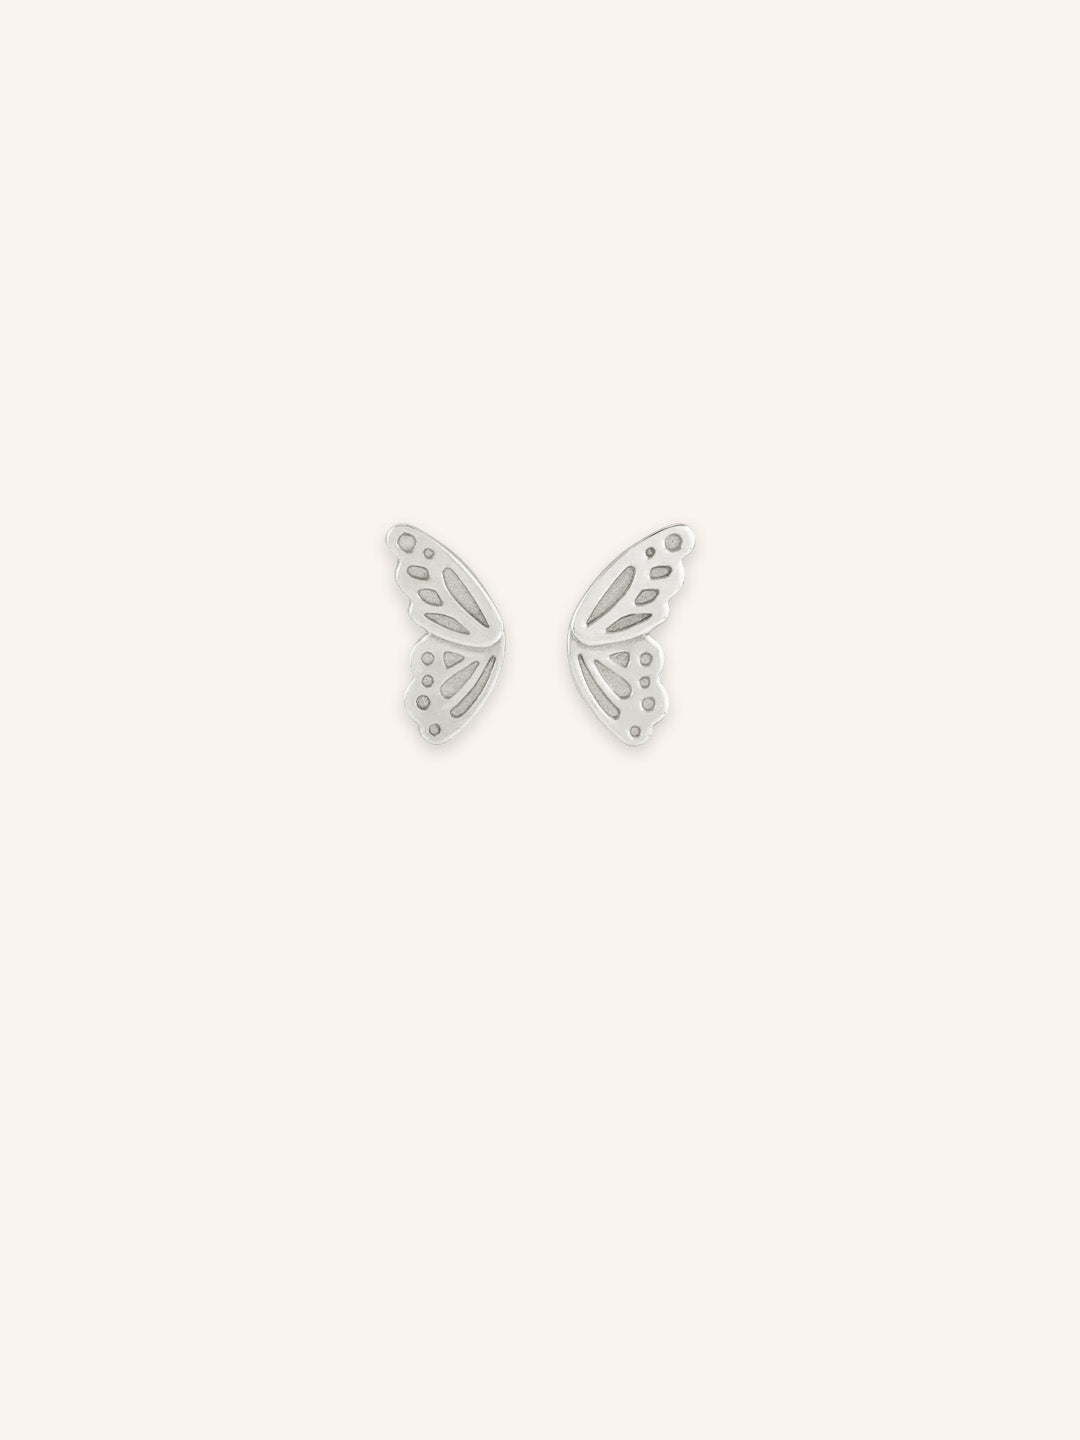 Butterfly Wings Stud Earrings